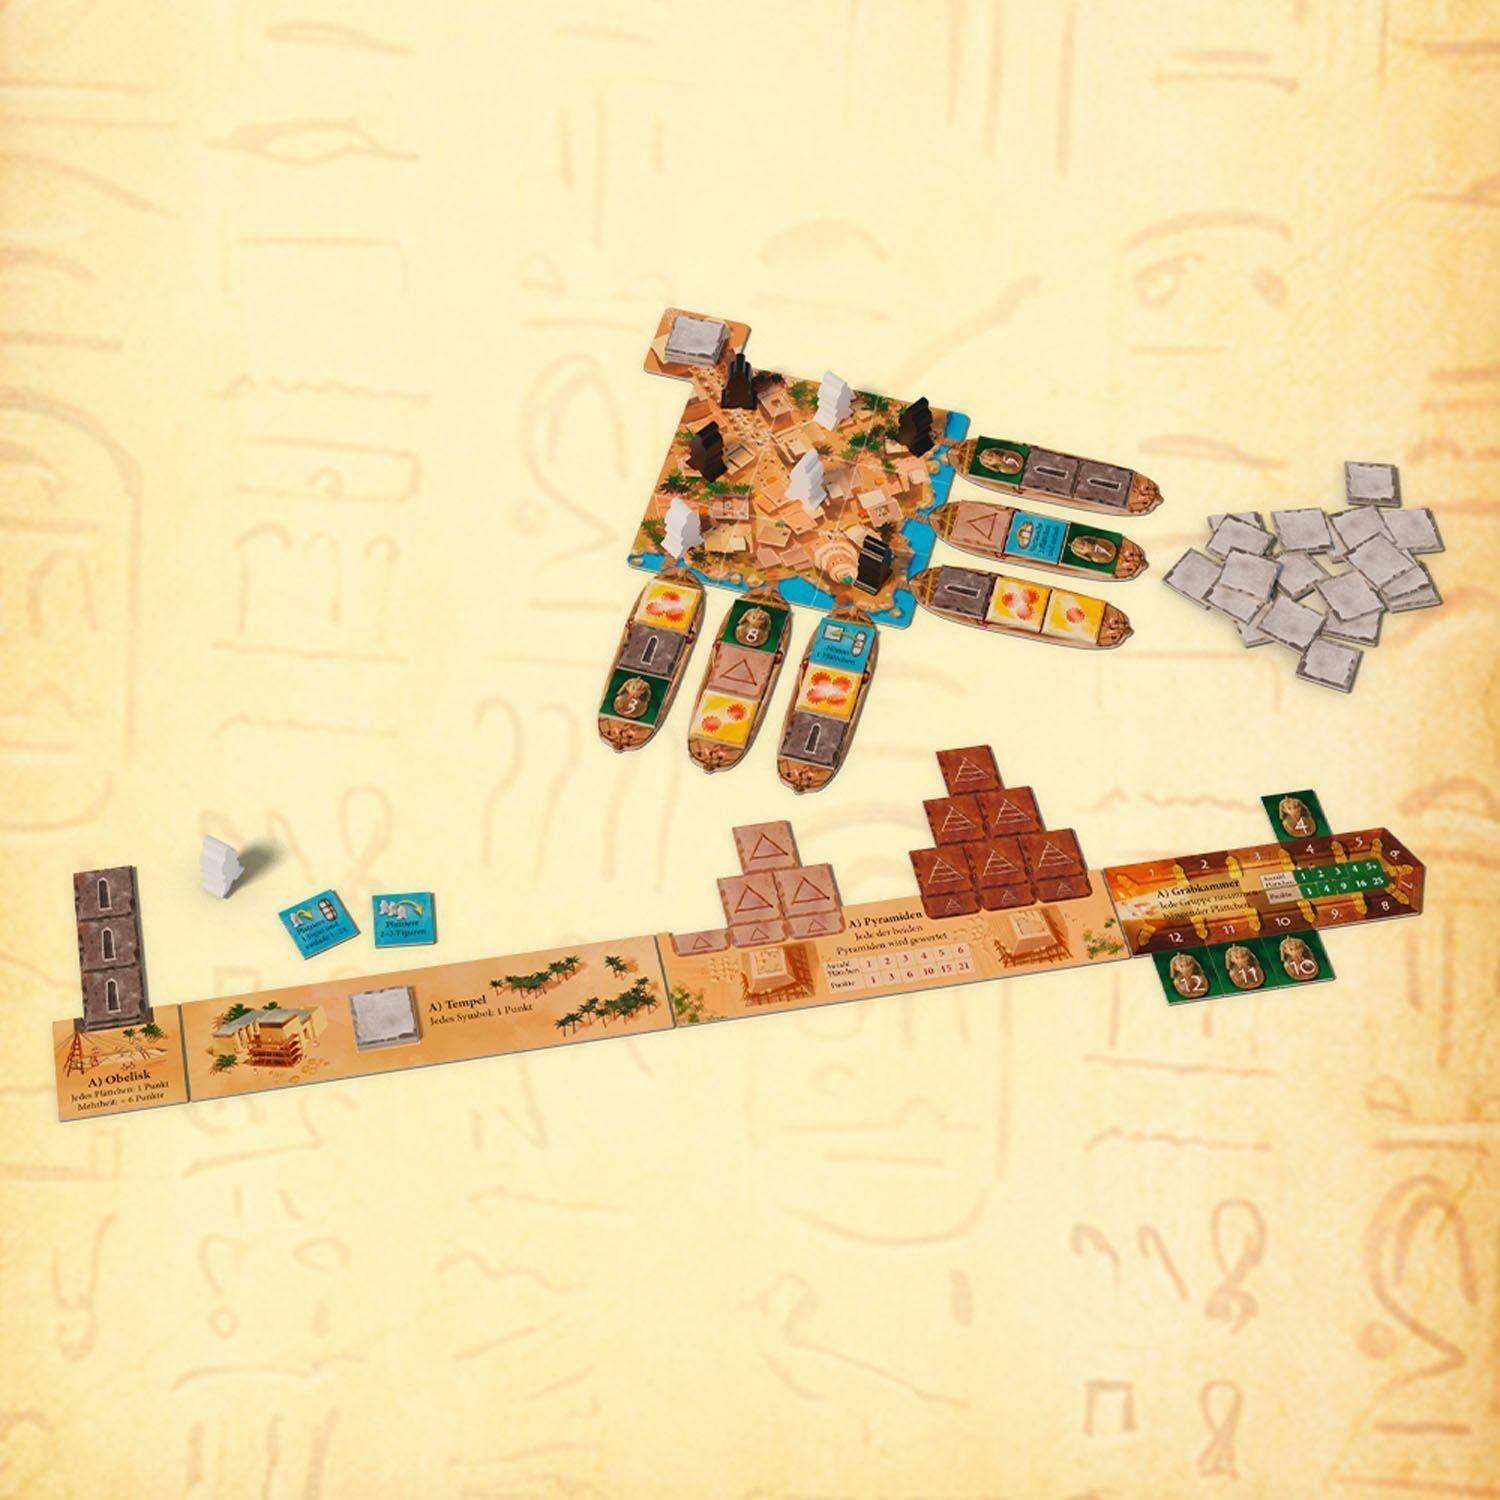 Kosmos Spiel, - Das Duell Imhotep